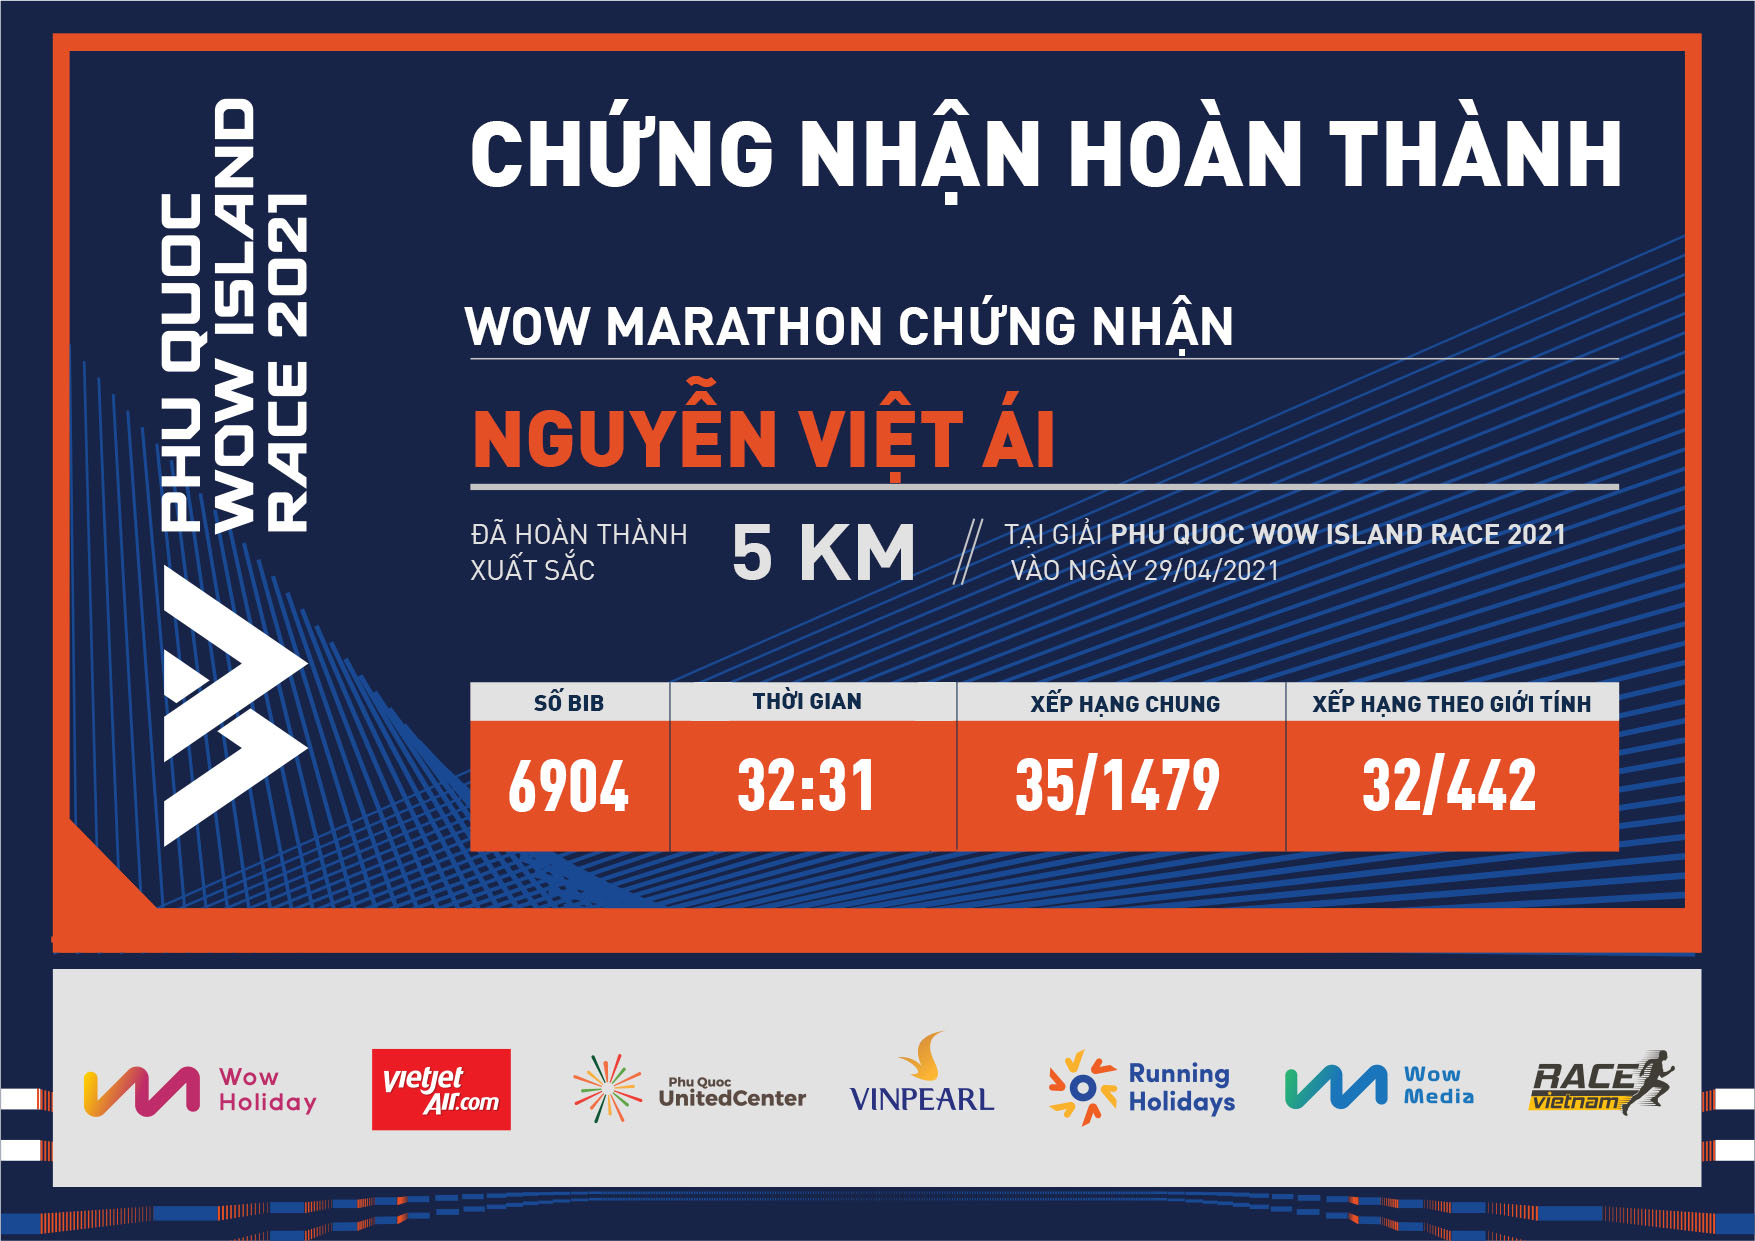 6904 - Nguyễn Việt Ái